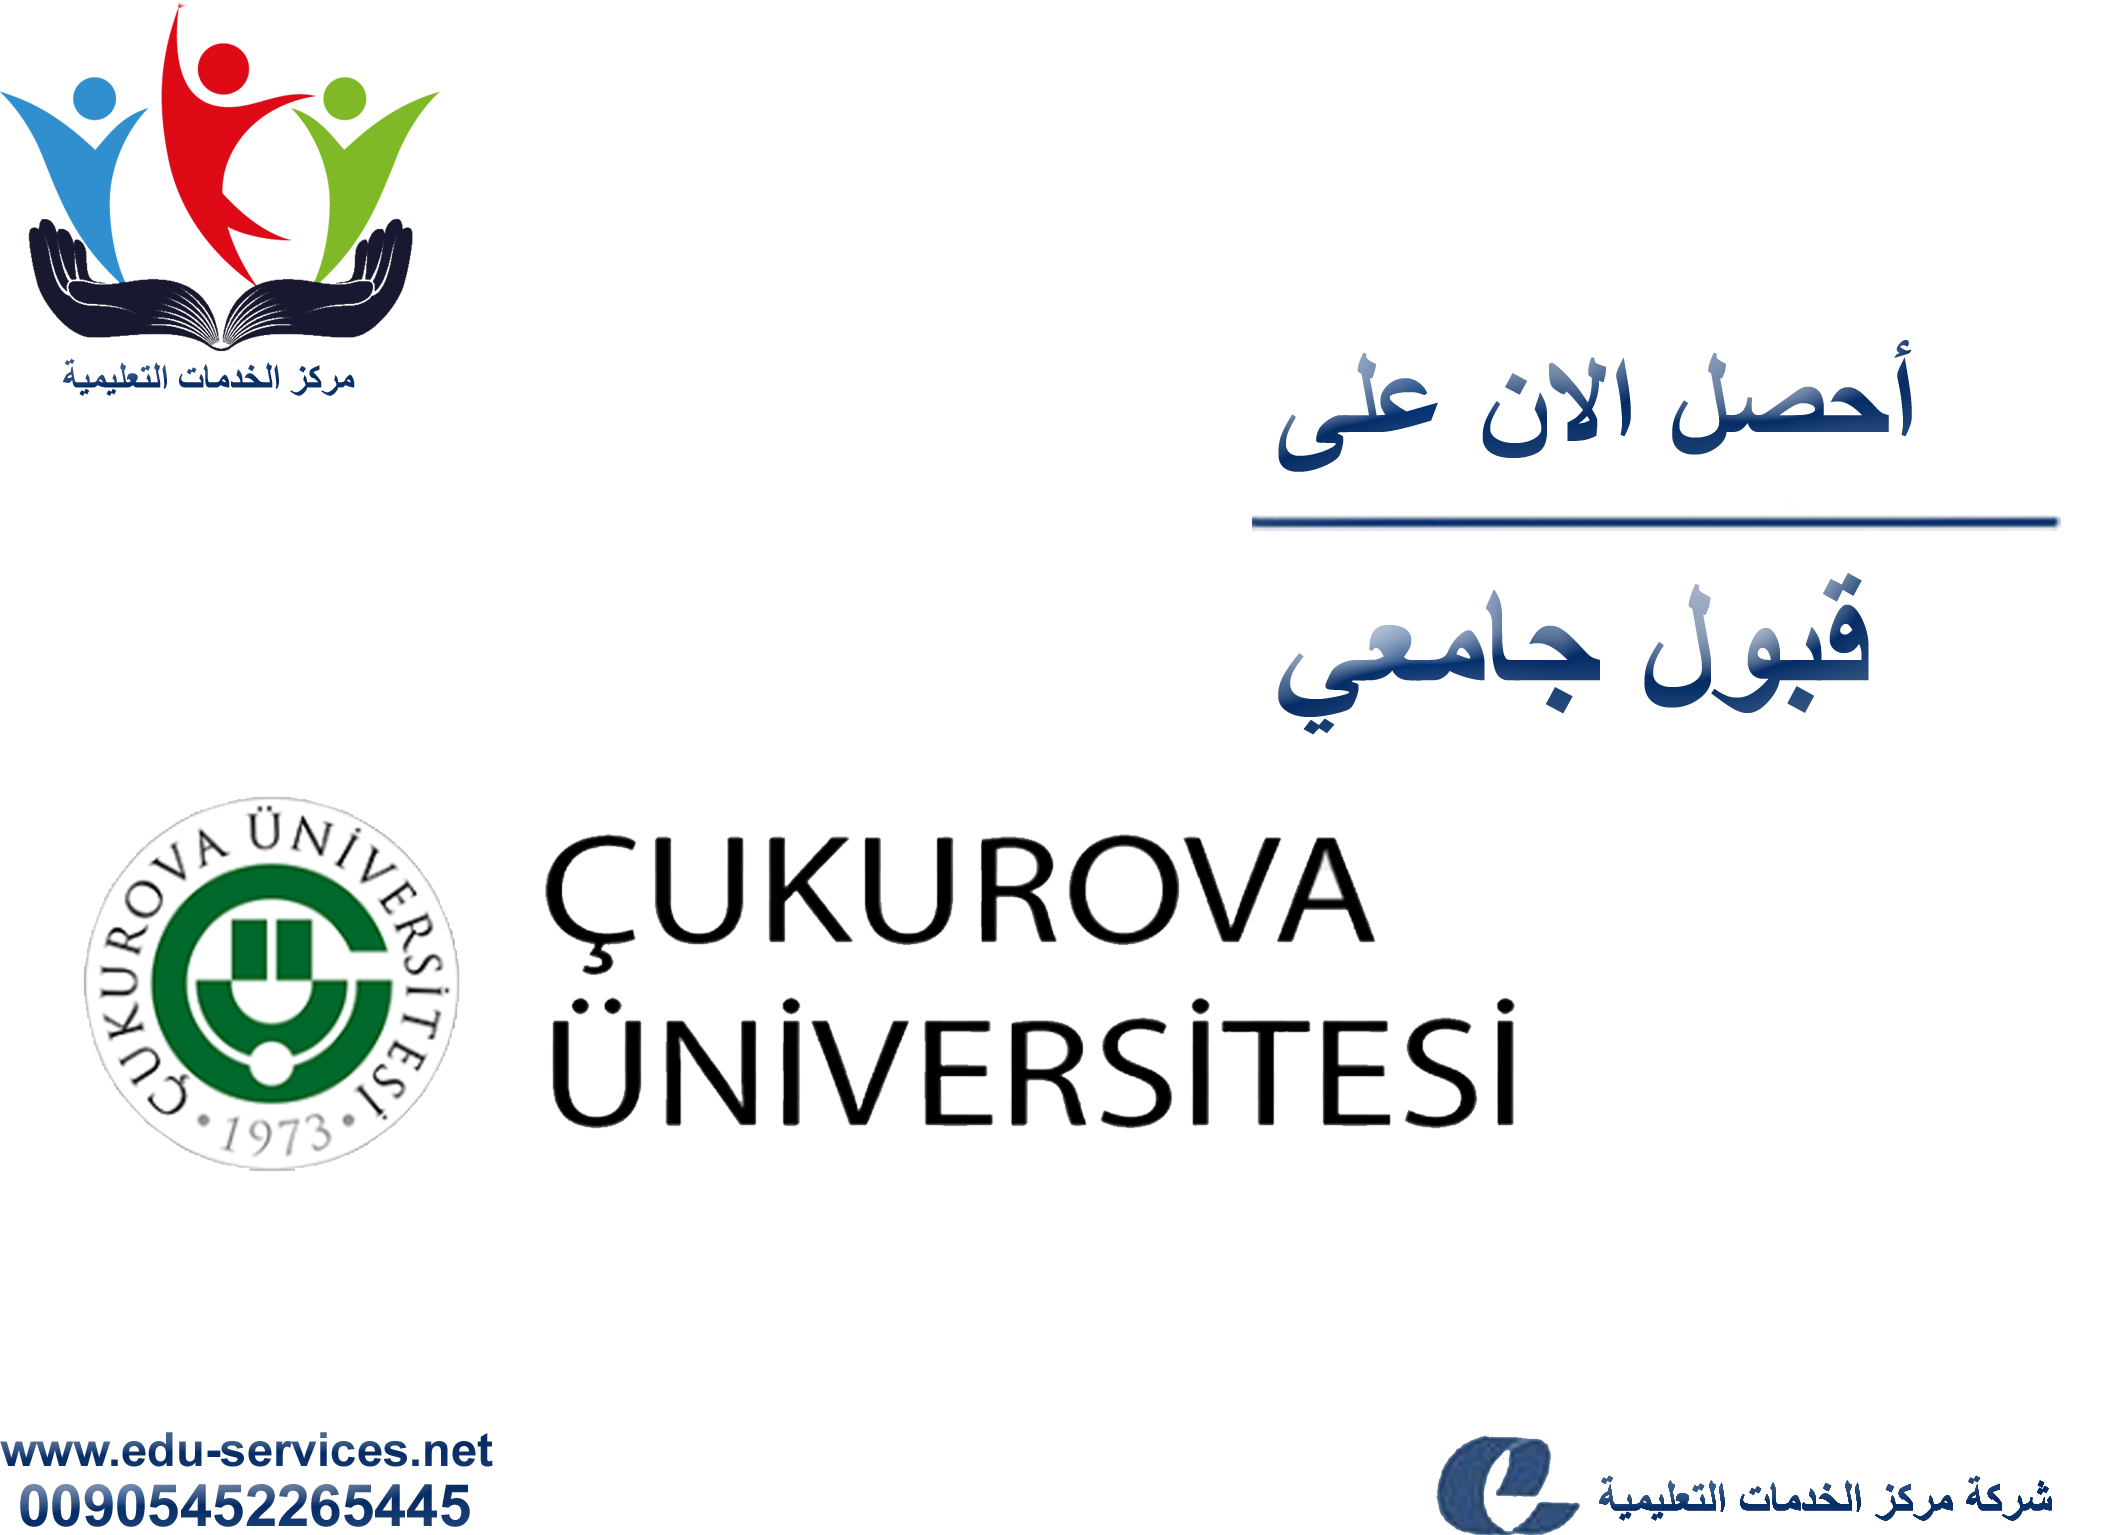 افتتاح التسجيل على جامعة تشوكوروفا للدراسات العليا للفصل الدراسي الثاني 2019/2018